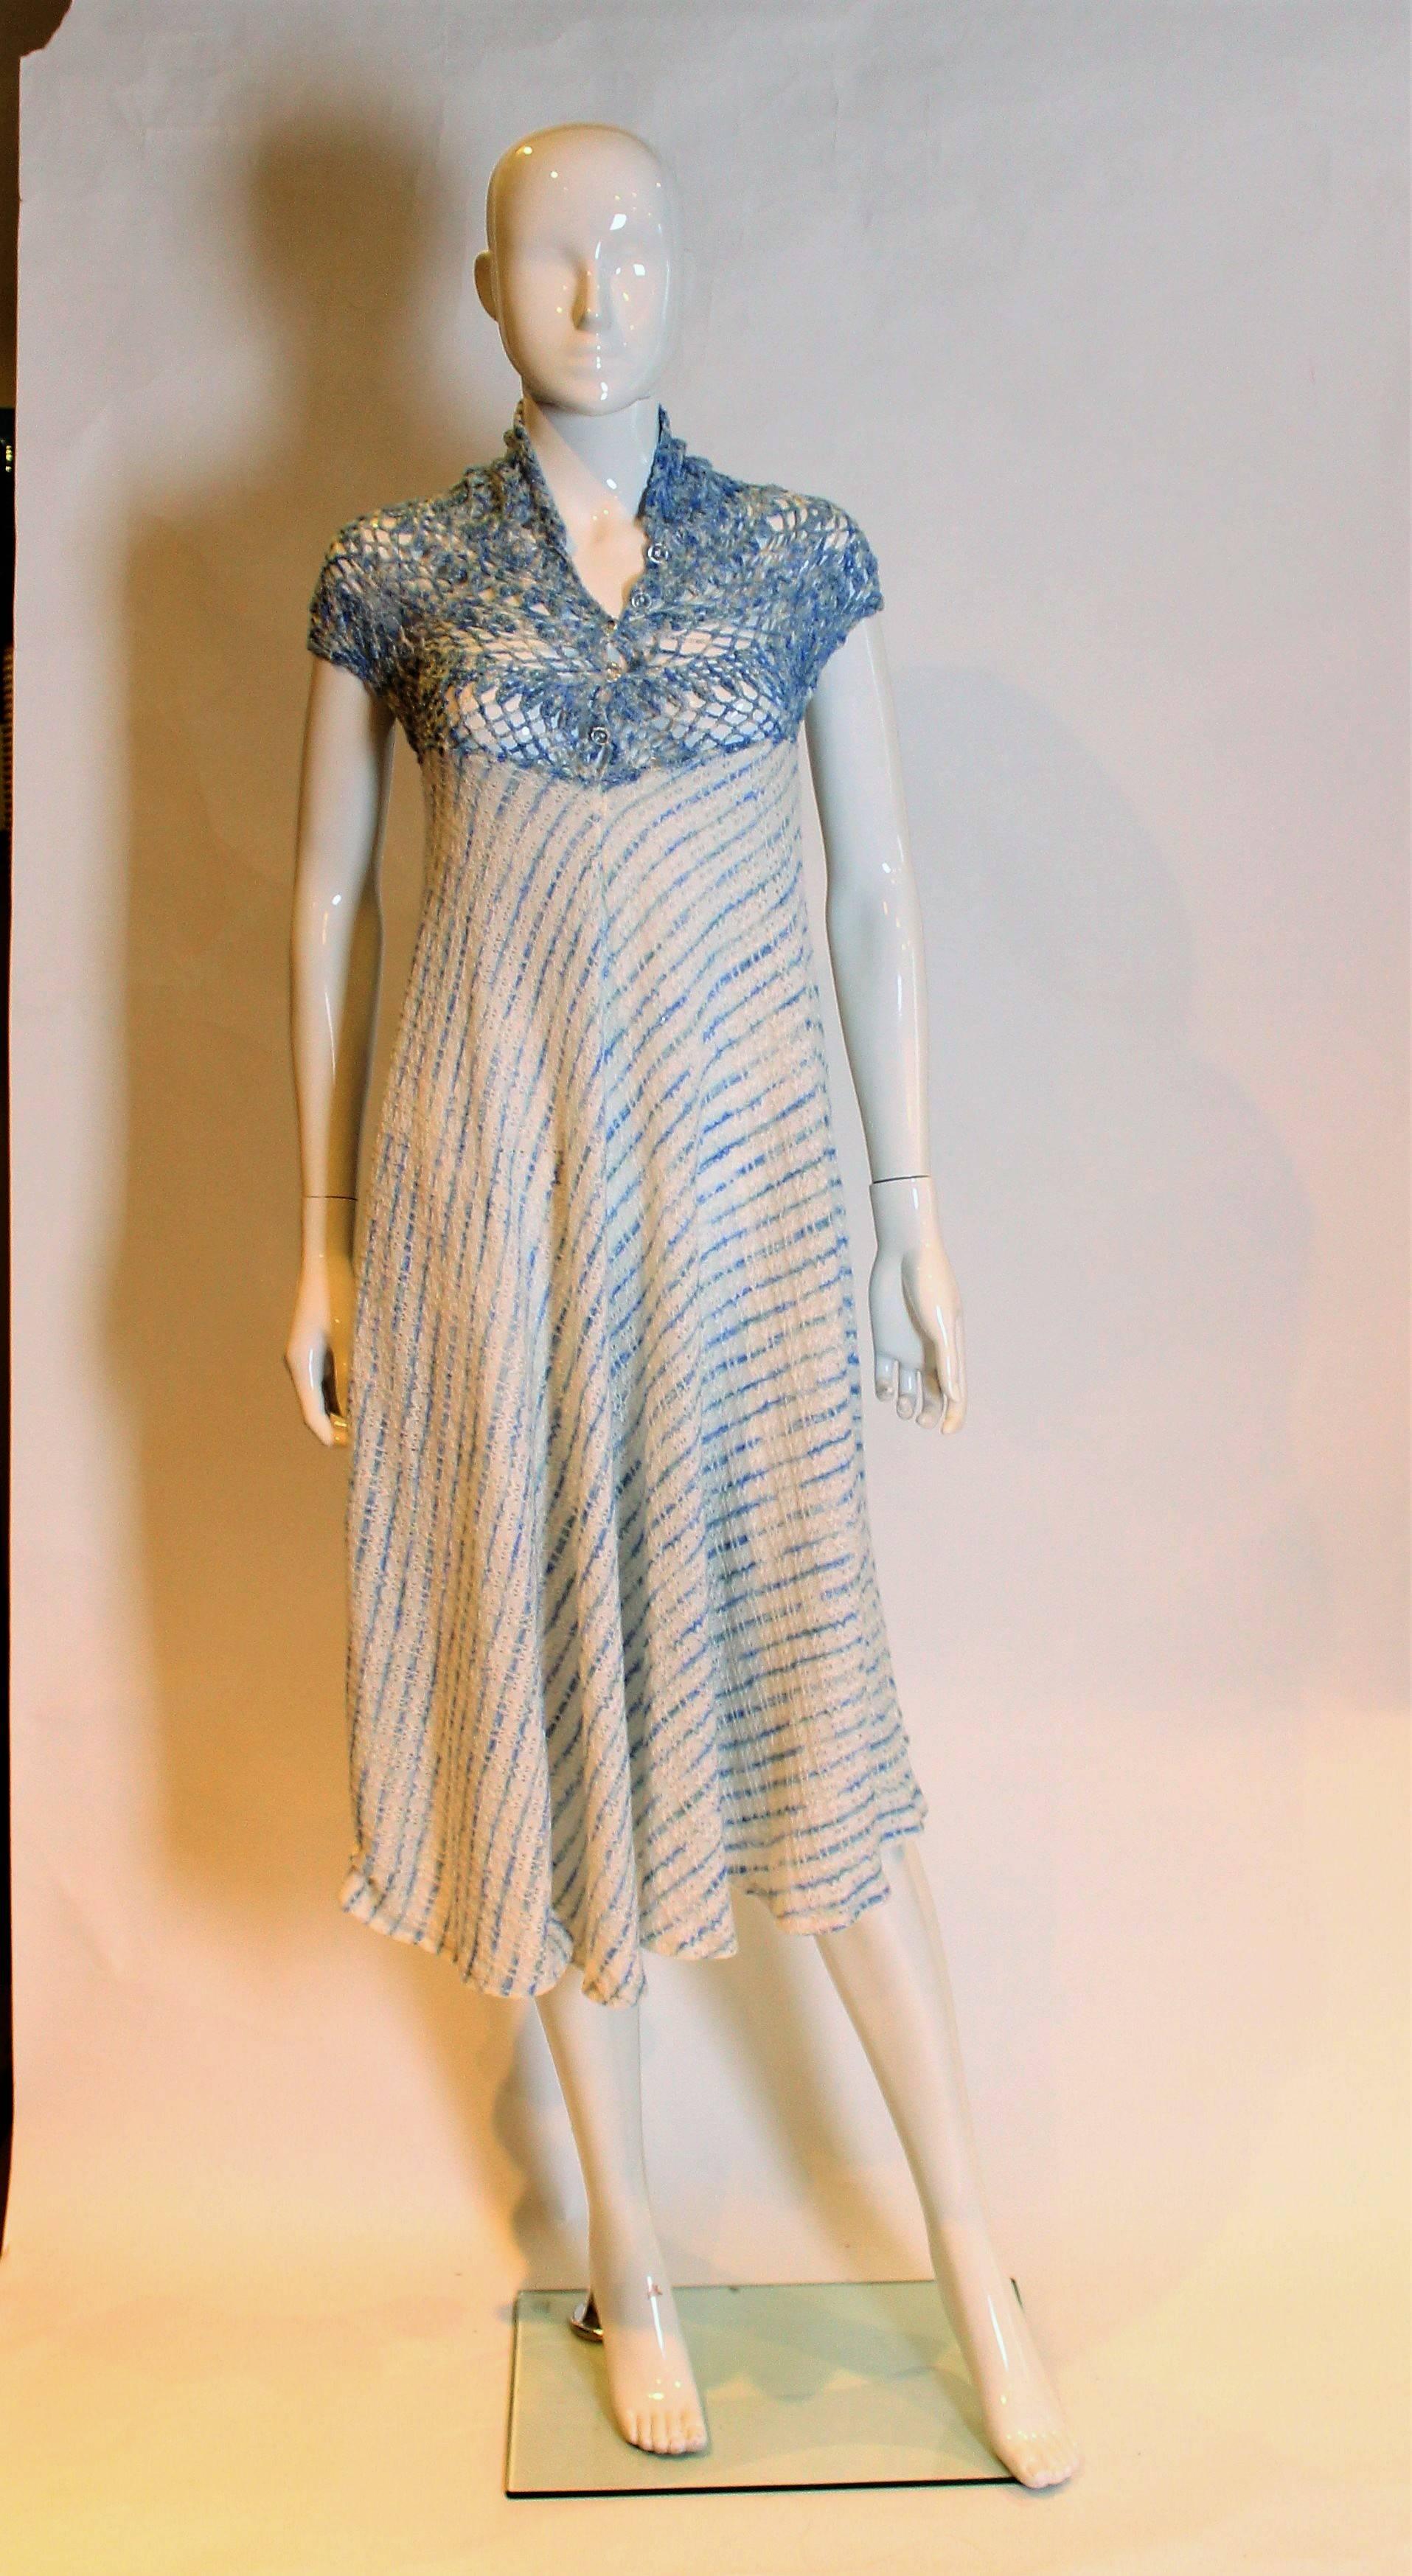 Ein tolles Kleid für den Sommer. Dieses Strickkleid hat ein blau-weißes Oberteil, das vorne mit 5 Knöpfen zu öffnen ist. Der Körper des Kleides ist eine A-Linie, die beim Gehen einen schönen Schwung gibt.